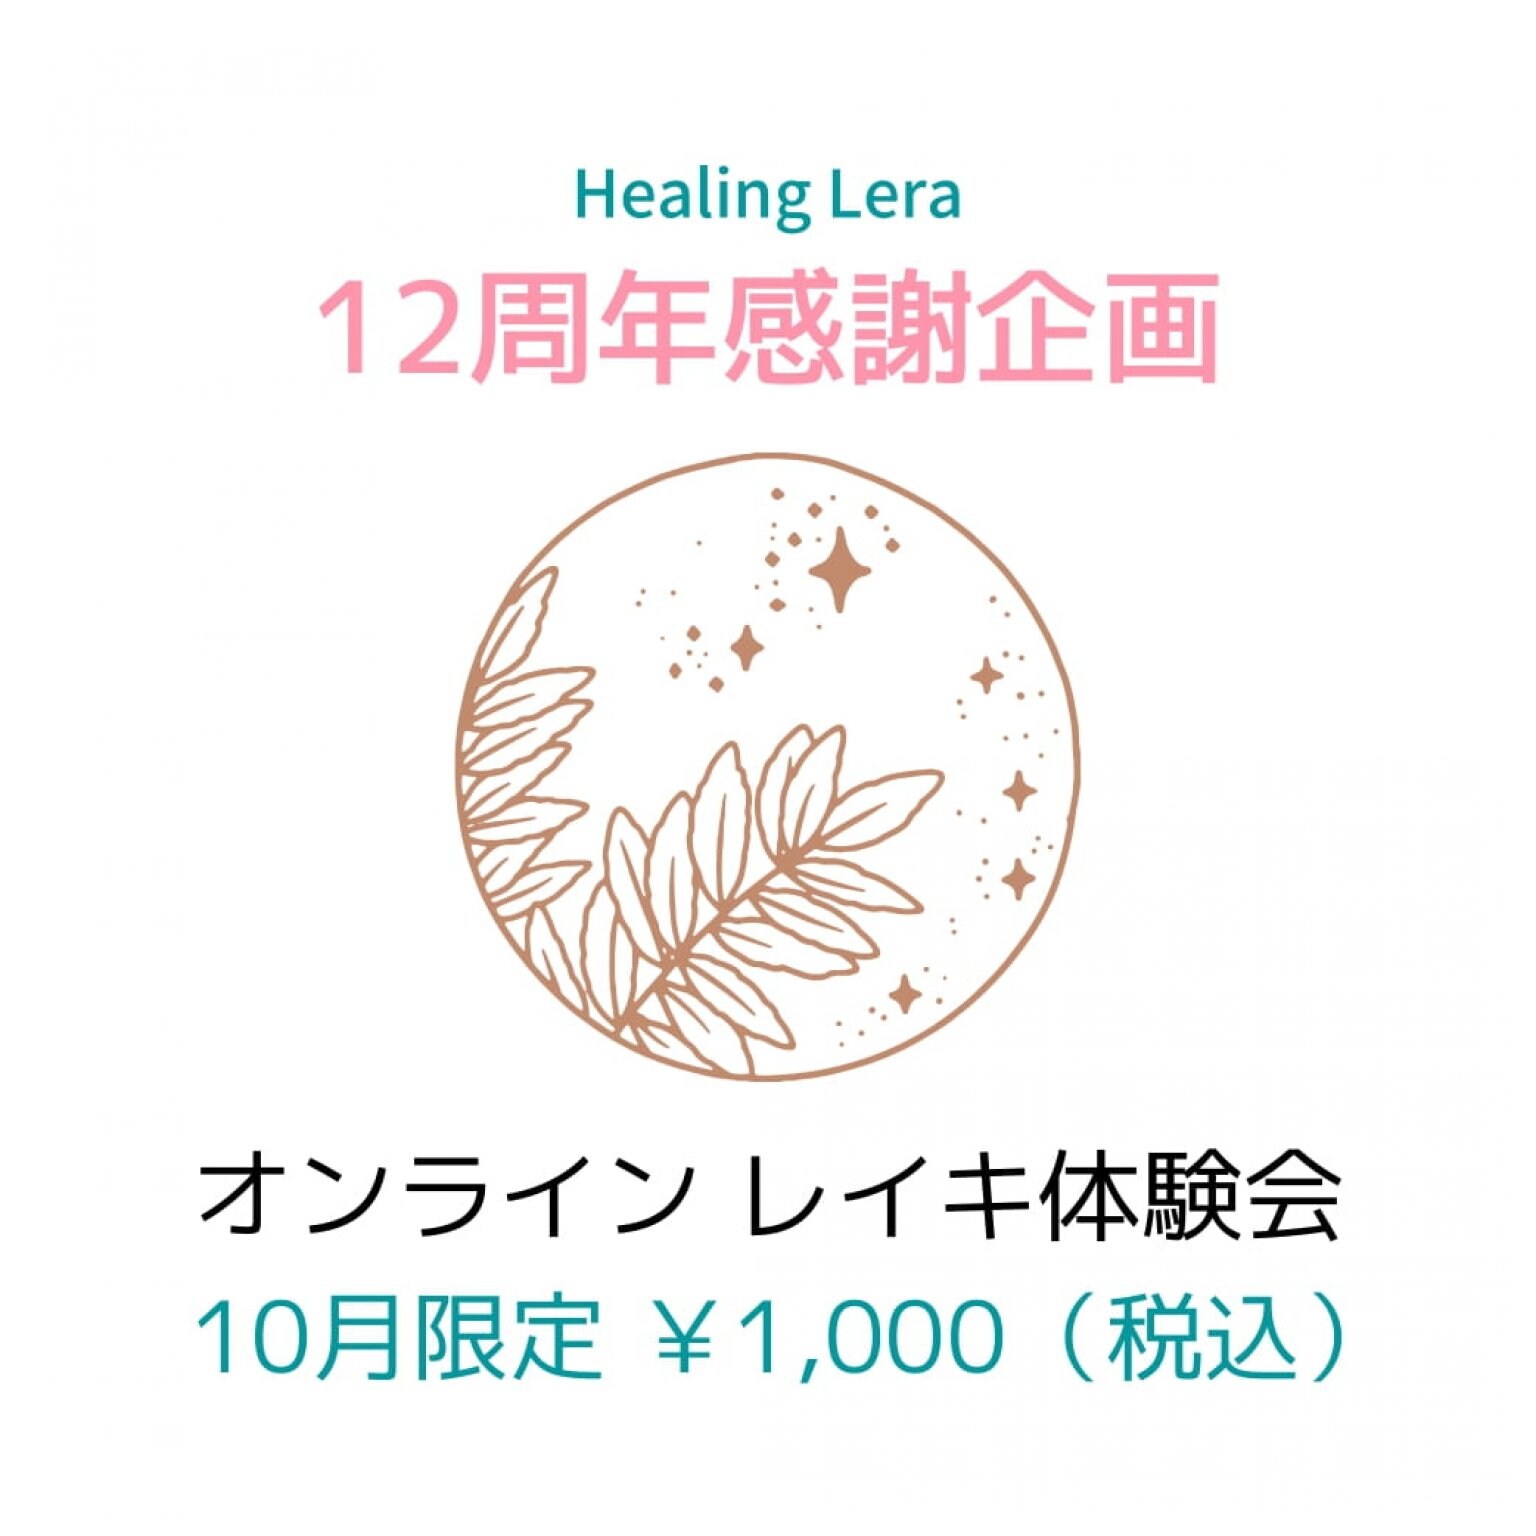 Healing Lera「12周年感謝企画・オンラインレイキ体験会」チケット